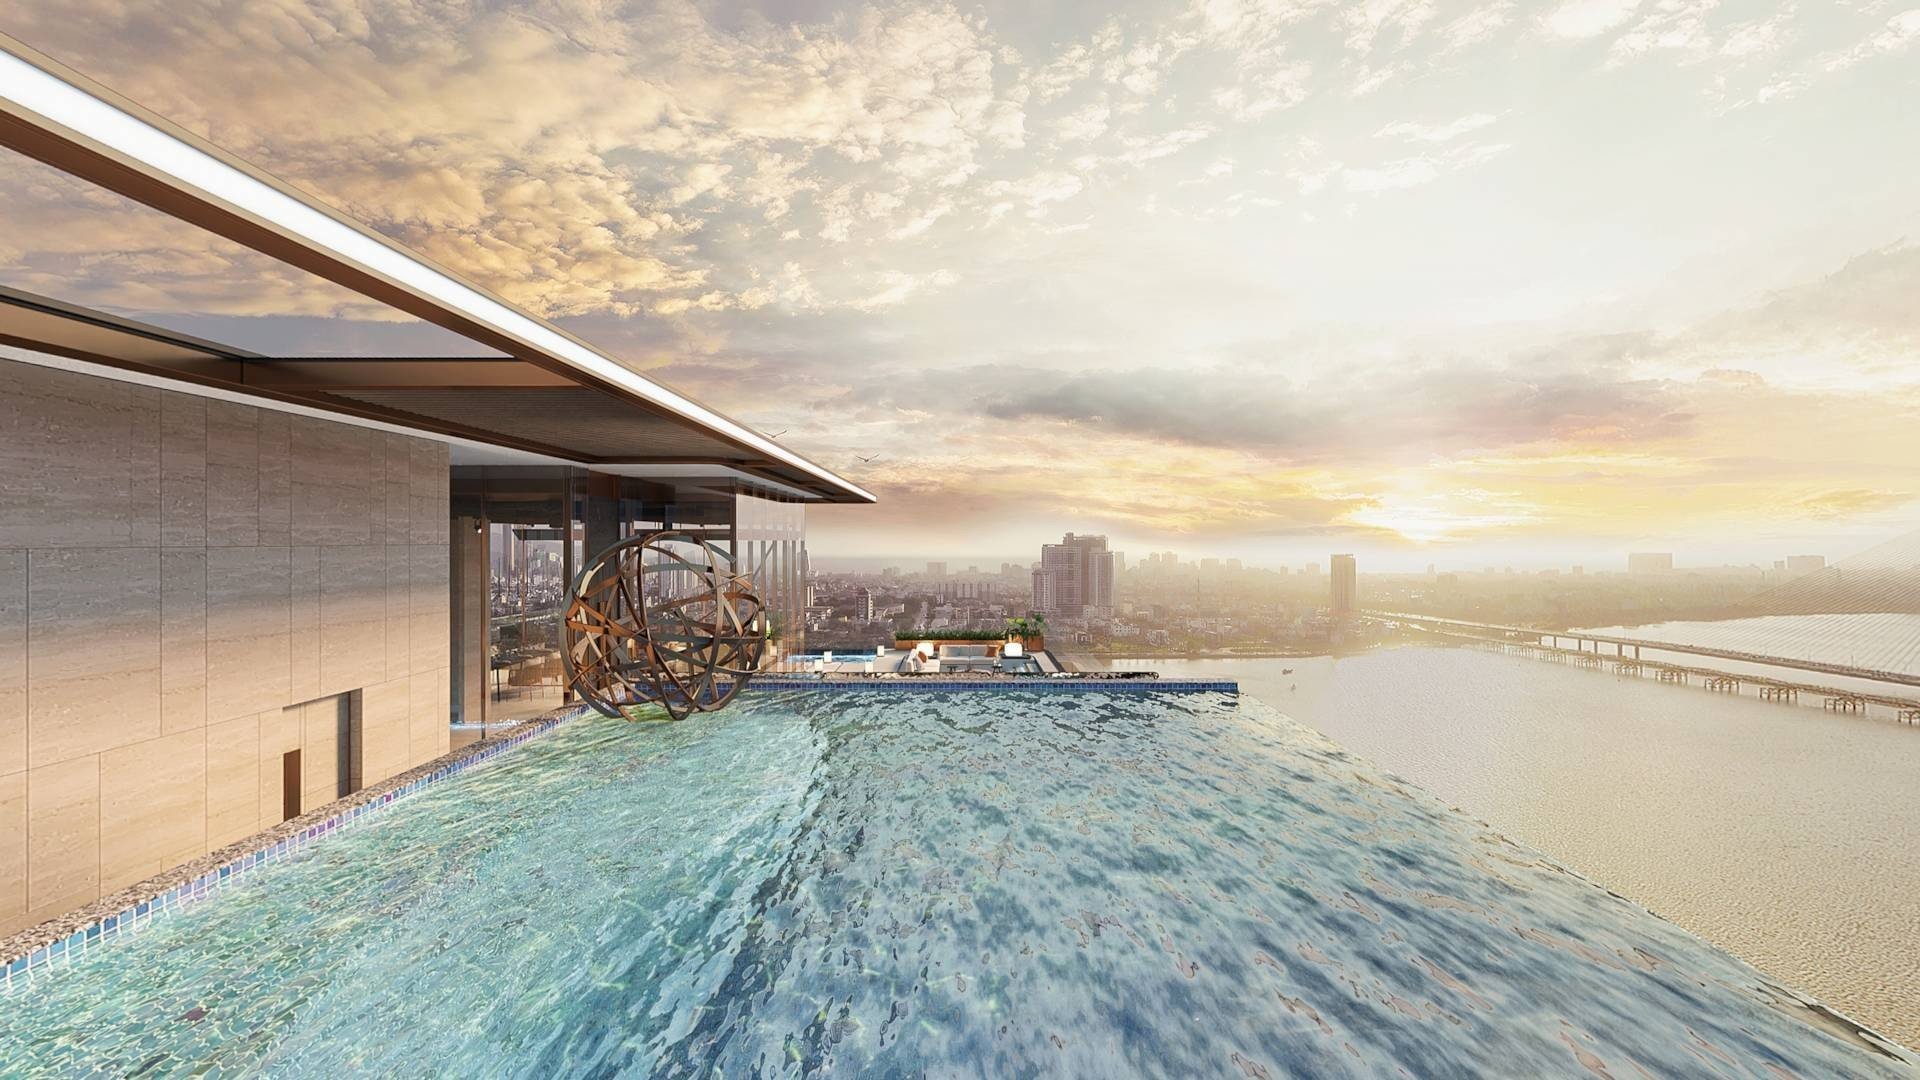 Bán căn hộ the Filmore Đà Nẵng giá chỉ từ 5,7 tỷ , có hồ bơi riêng - Liên hệ 0903407925 Hương 9